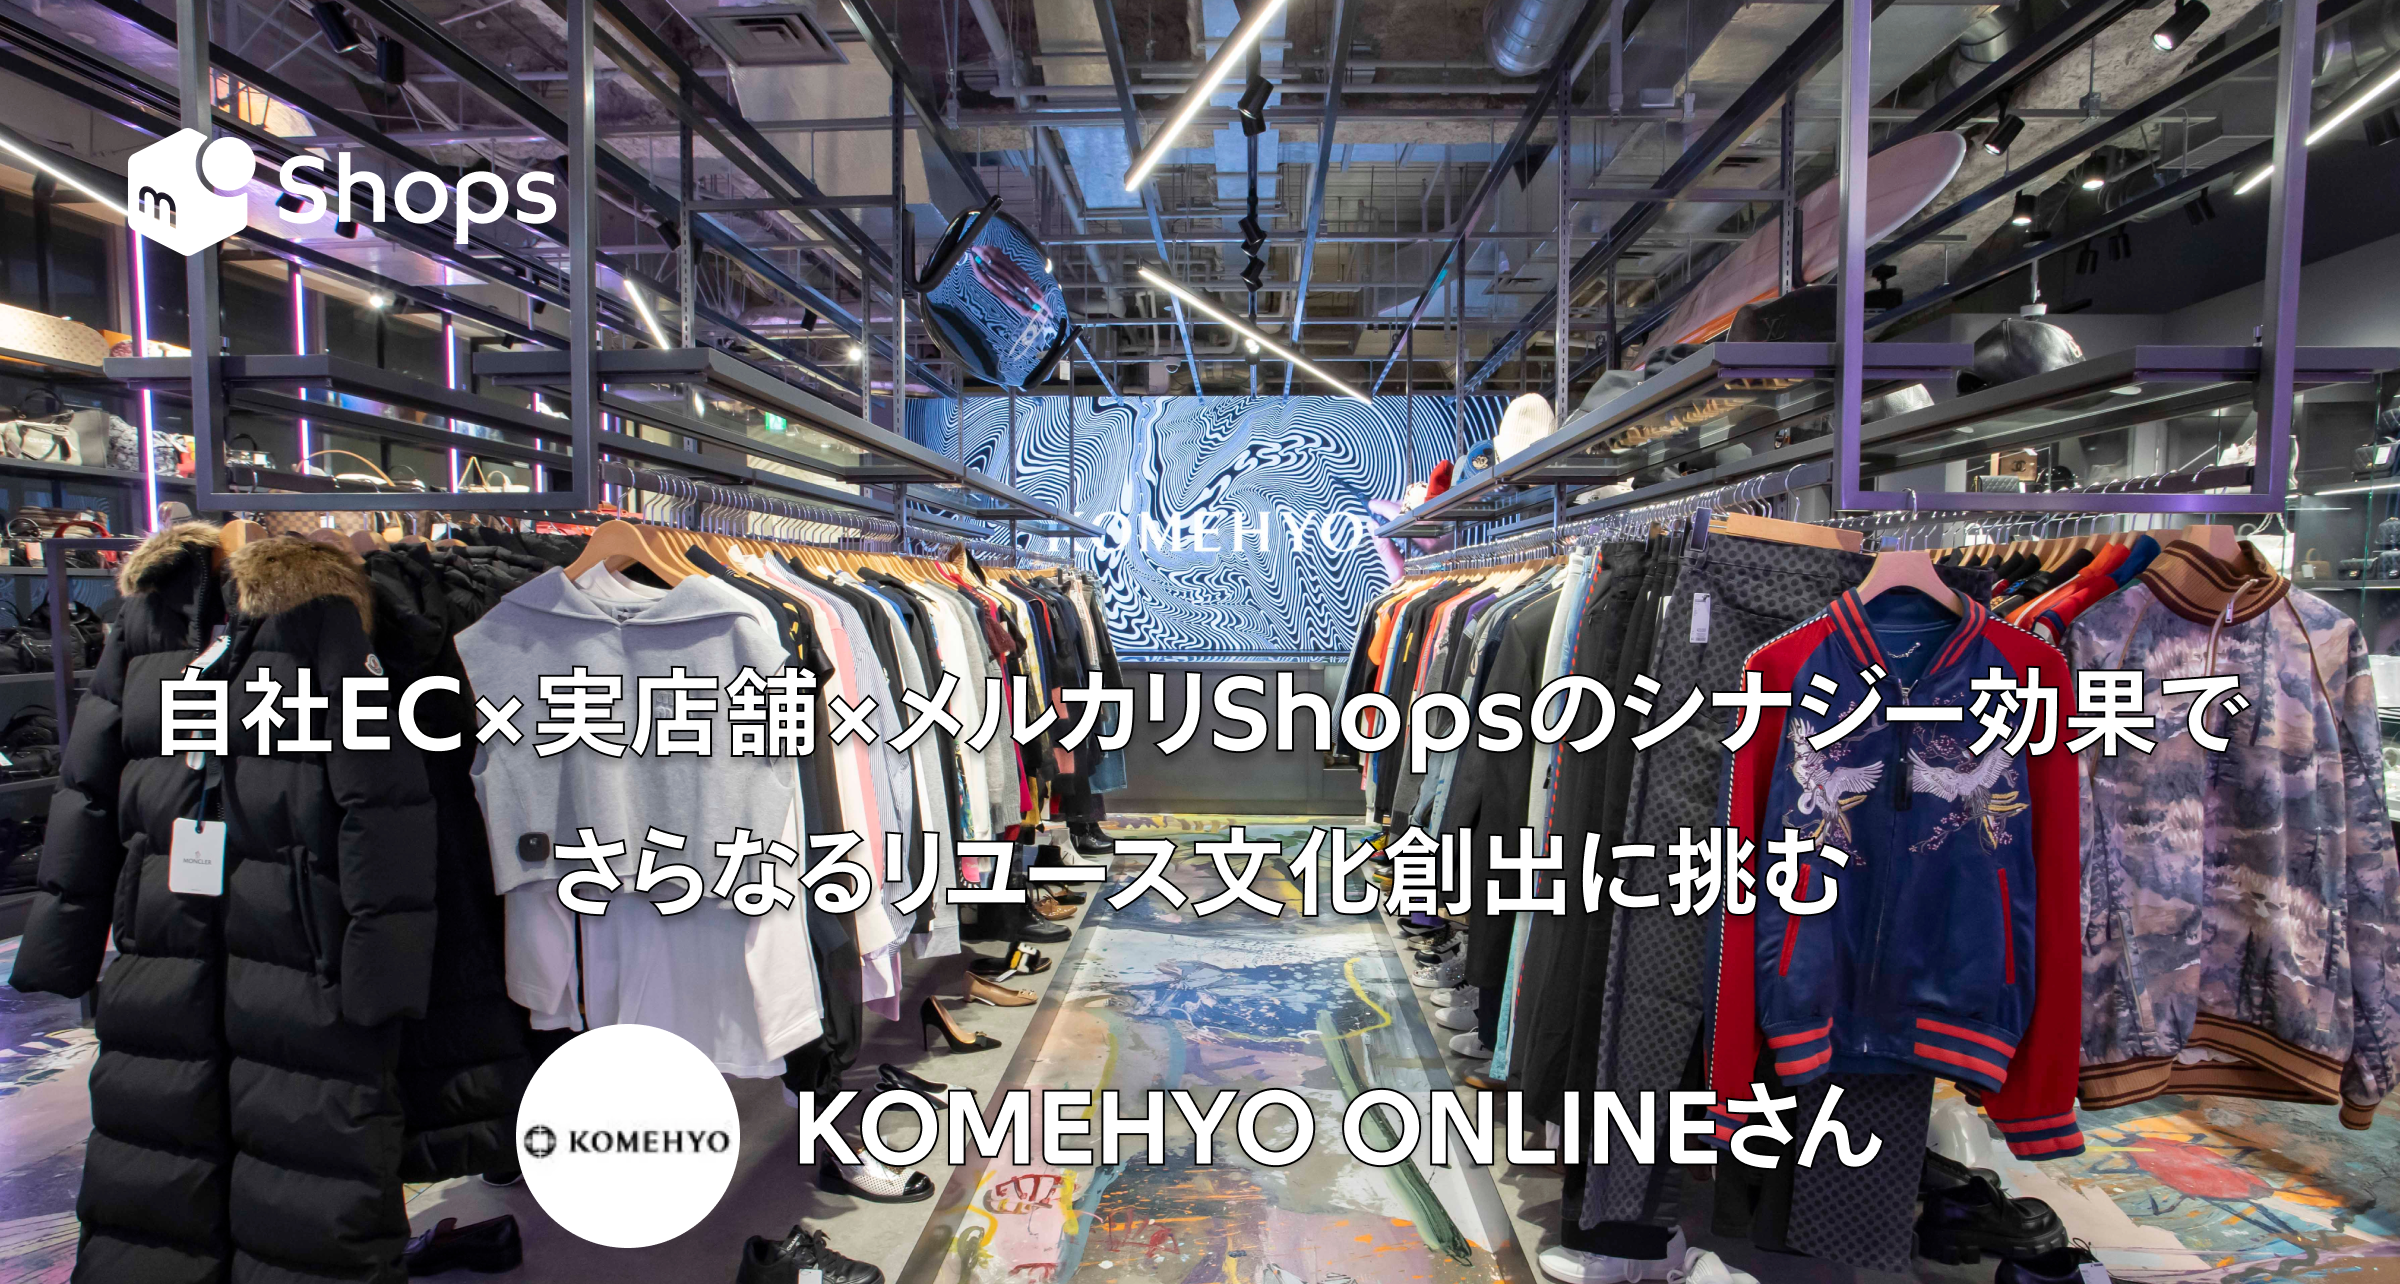 自社EC×実店舗×メルカリShopsのシナジー効果で、さらなるリユース文化創出に挑む。「KOMEHYO ONLINE」さん